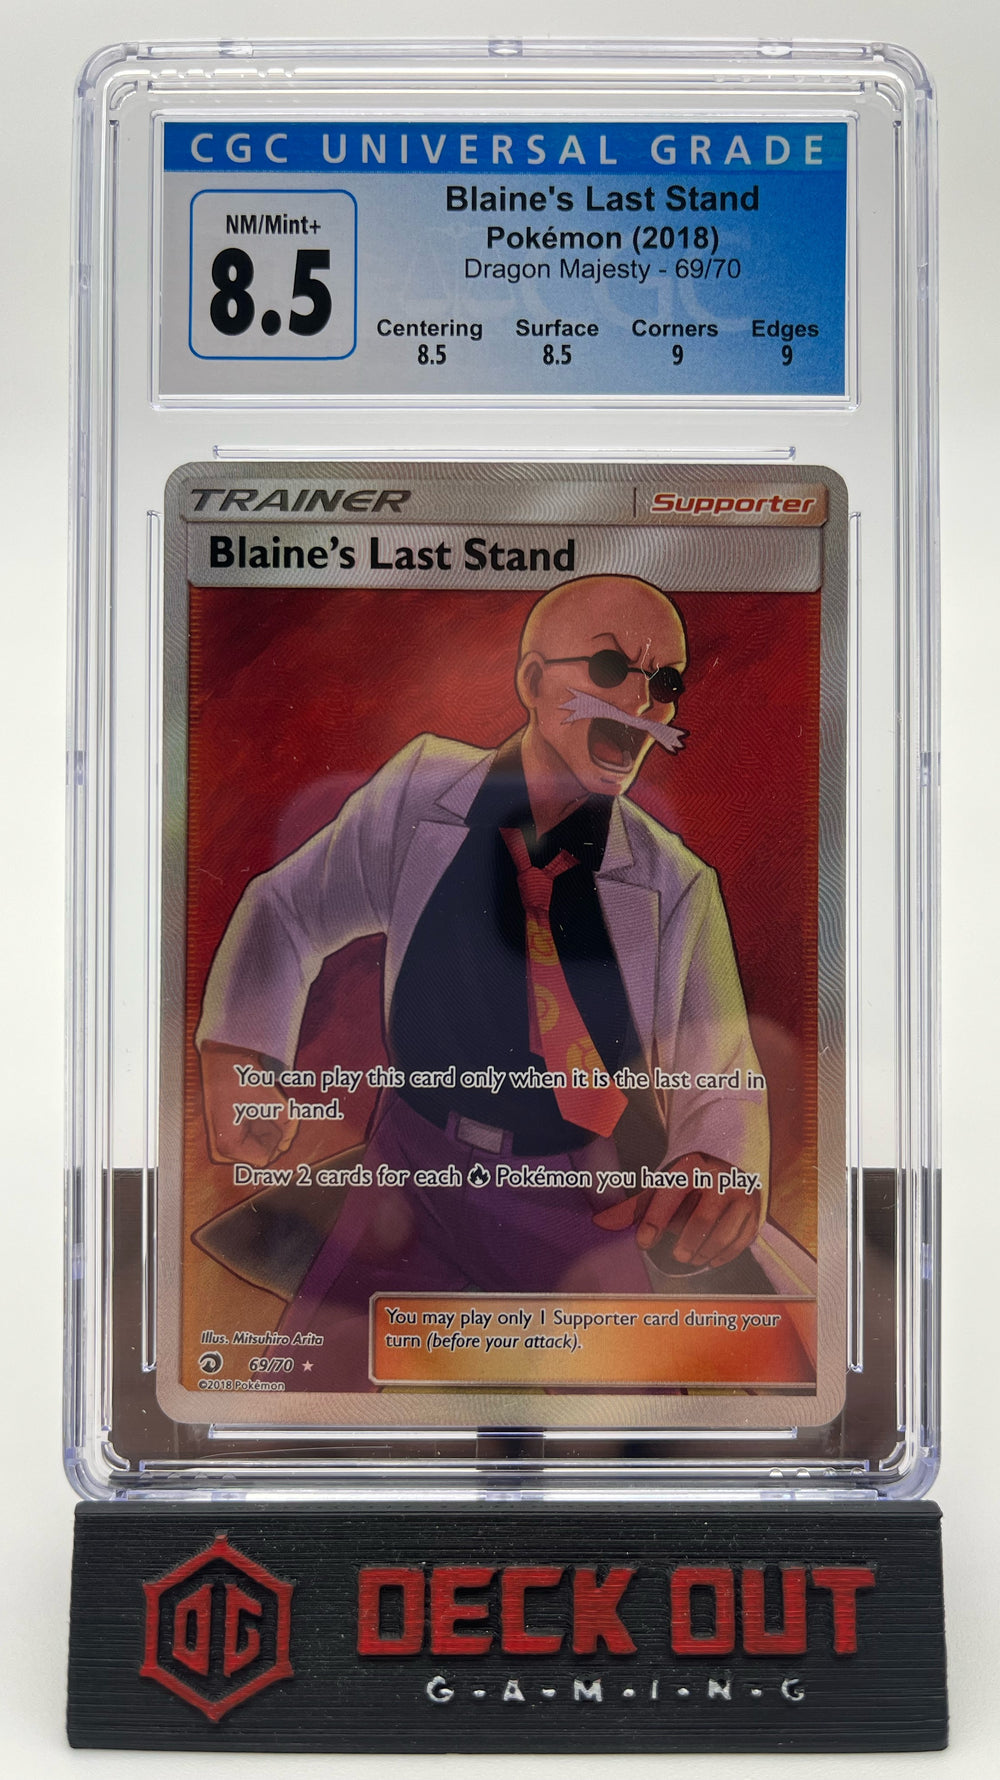 Blaine's Last Stand - Dragon Majesty - 69/70 - CGC 8.5 (8.5/8.5/9.0/9.0)